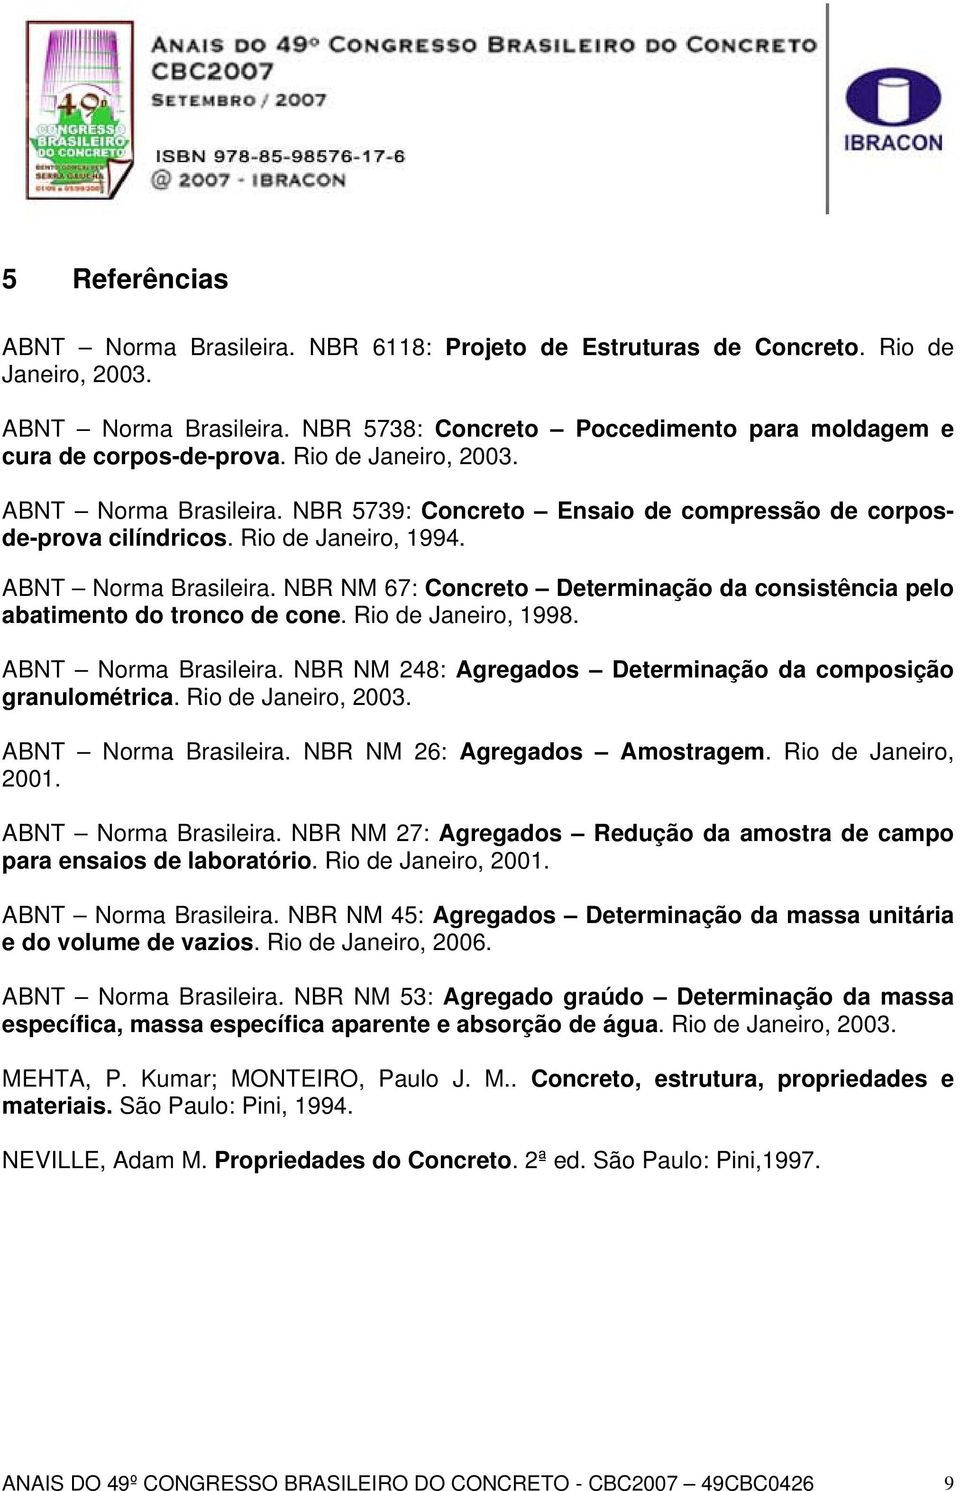 Rio de Janeiro, 1998. ABNT Norma Brasileira. NBR NM 248: Agregados Determinação da composição granulométrica. Rio de Janeiro, 2003. ABNT Norma Brasileira. NBR NM 26: Agregados Amostragem.